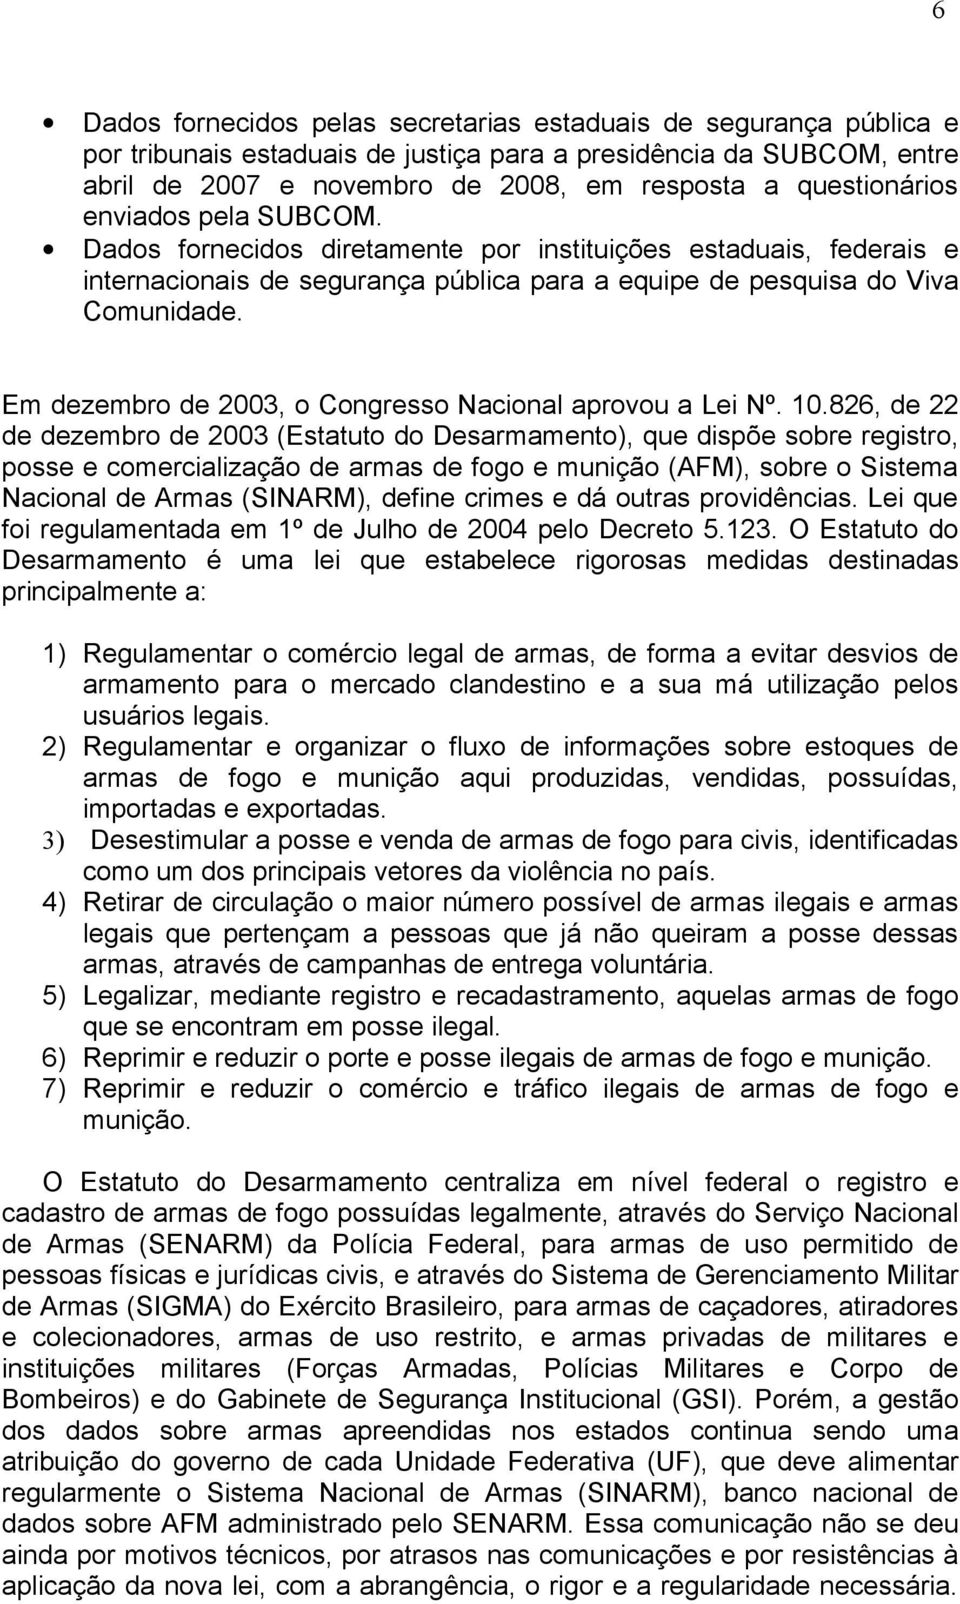 Em dezembro de 2003, o Congresso Nacional aprovou a Lei Nº. 10.